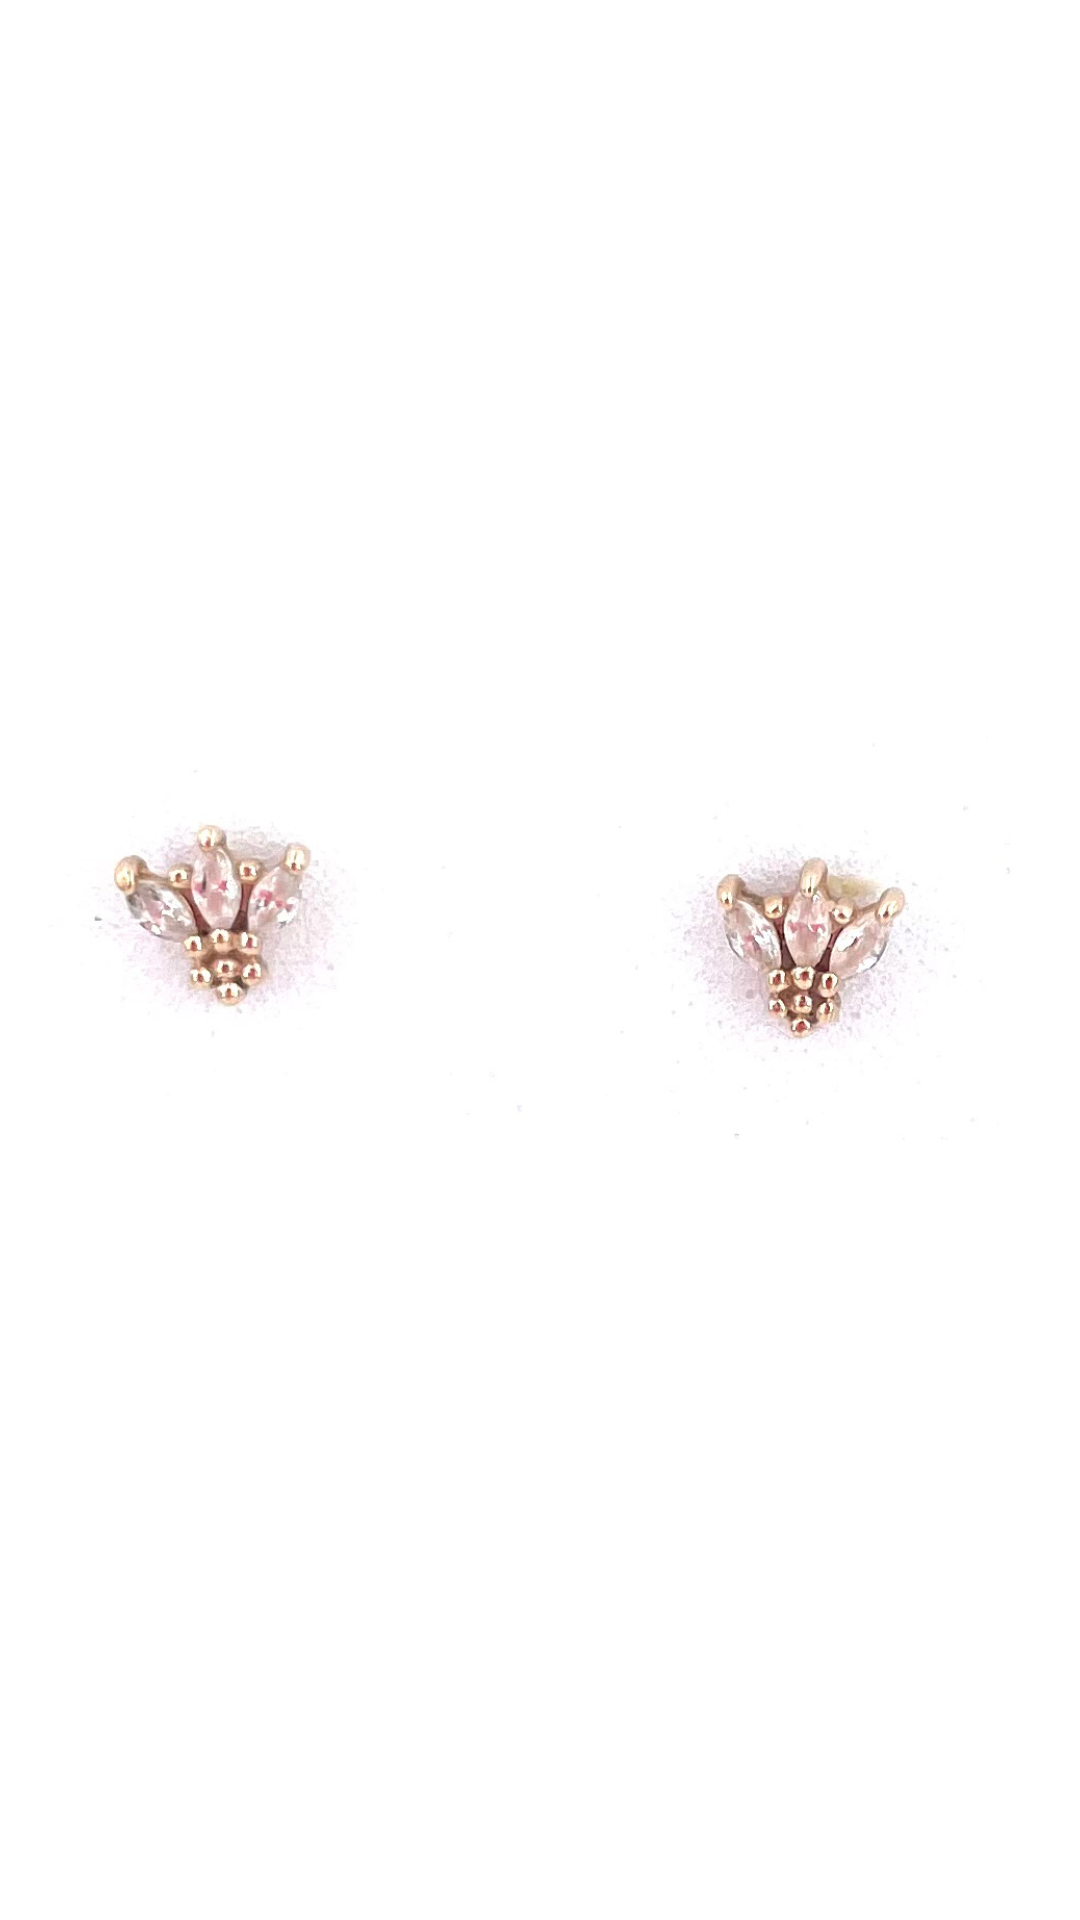 Clairette Collection bijoux gravés et personnalisés à la main boucles d'oreilles puces maya or